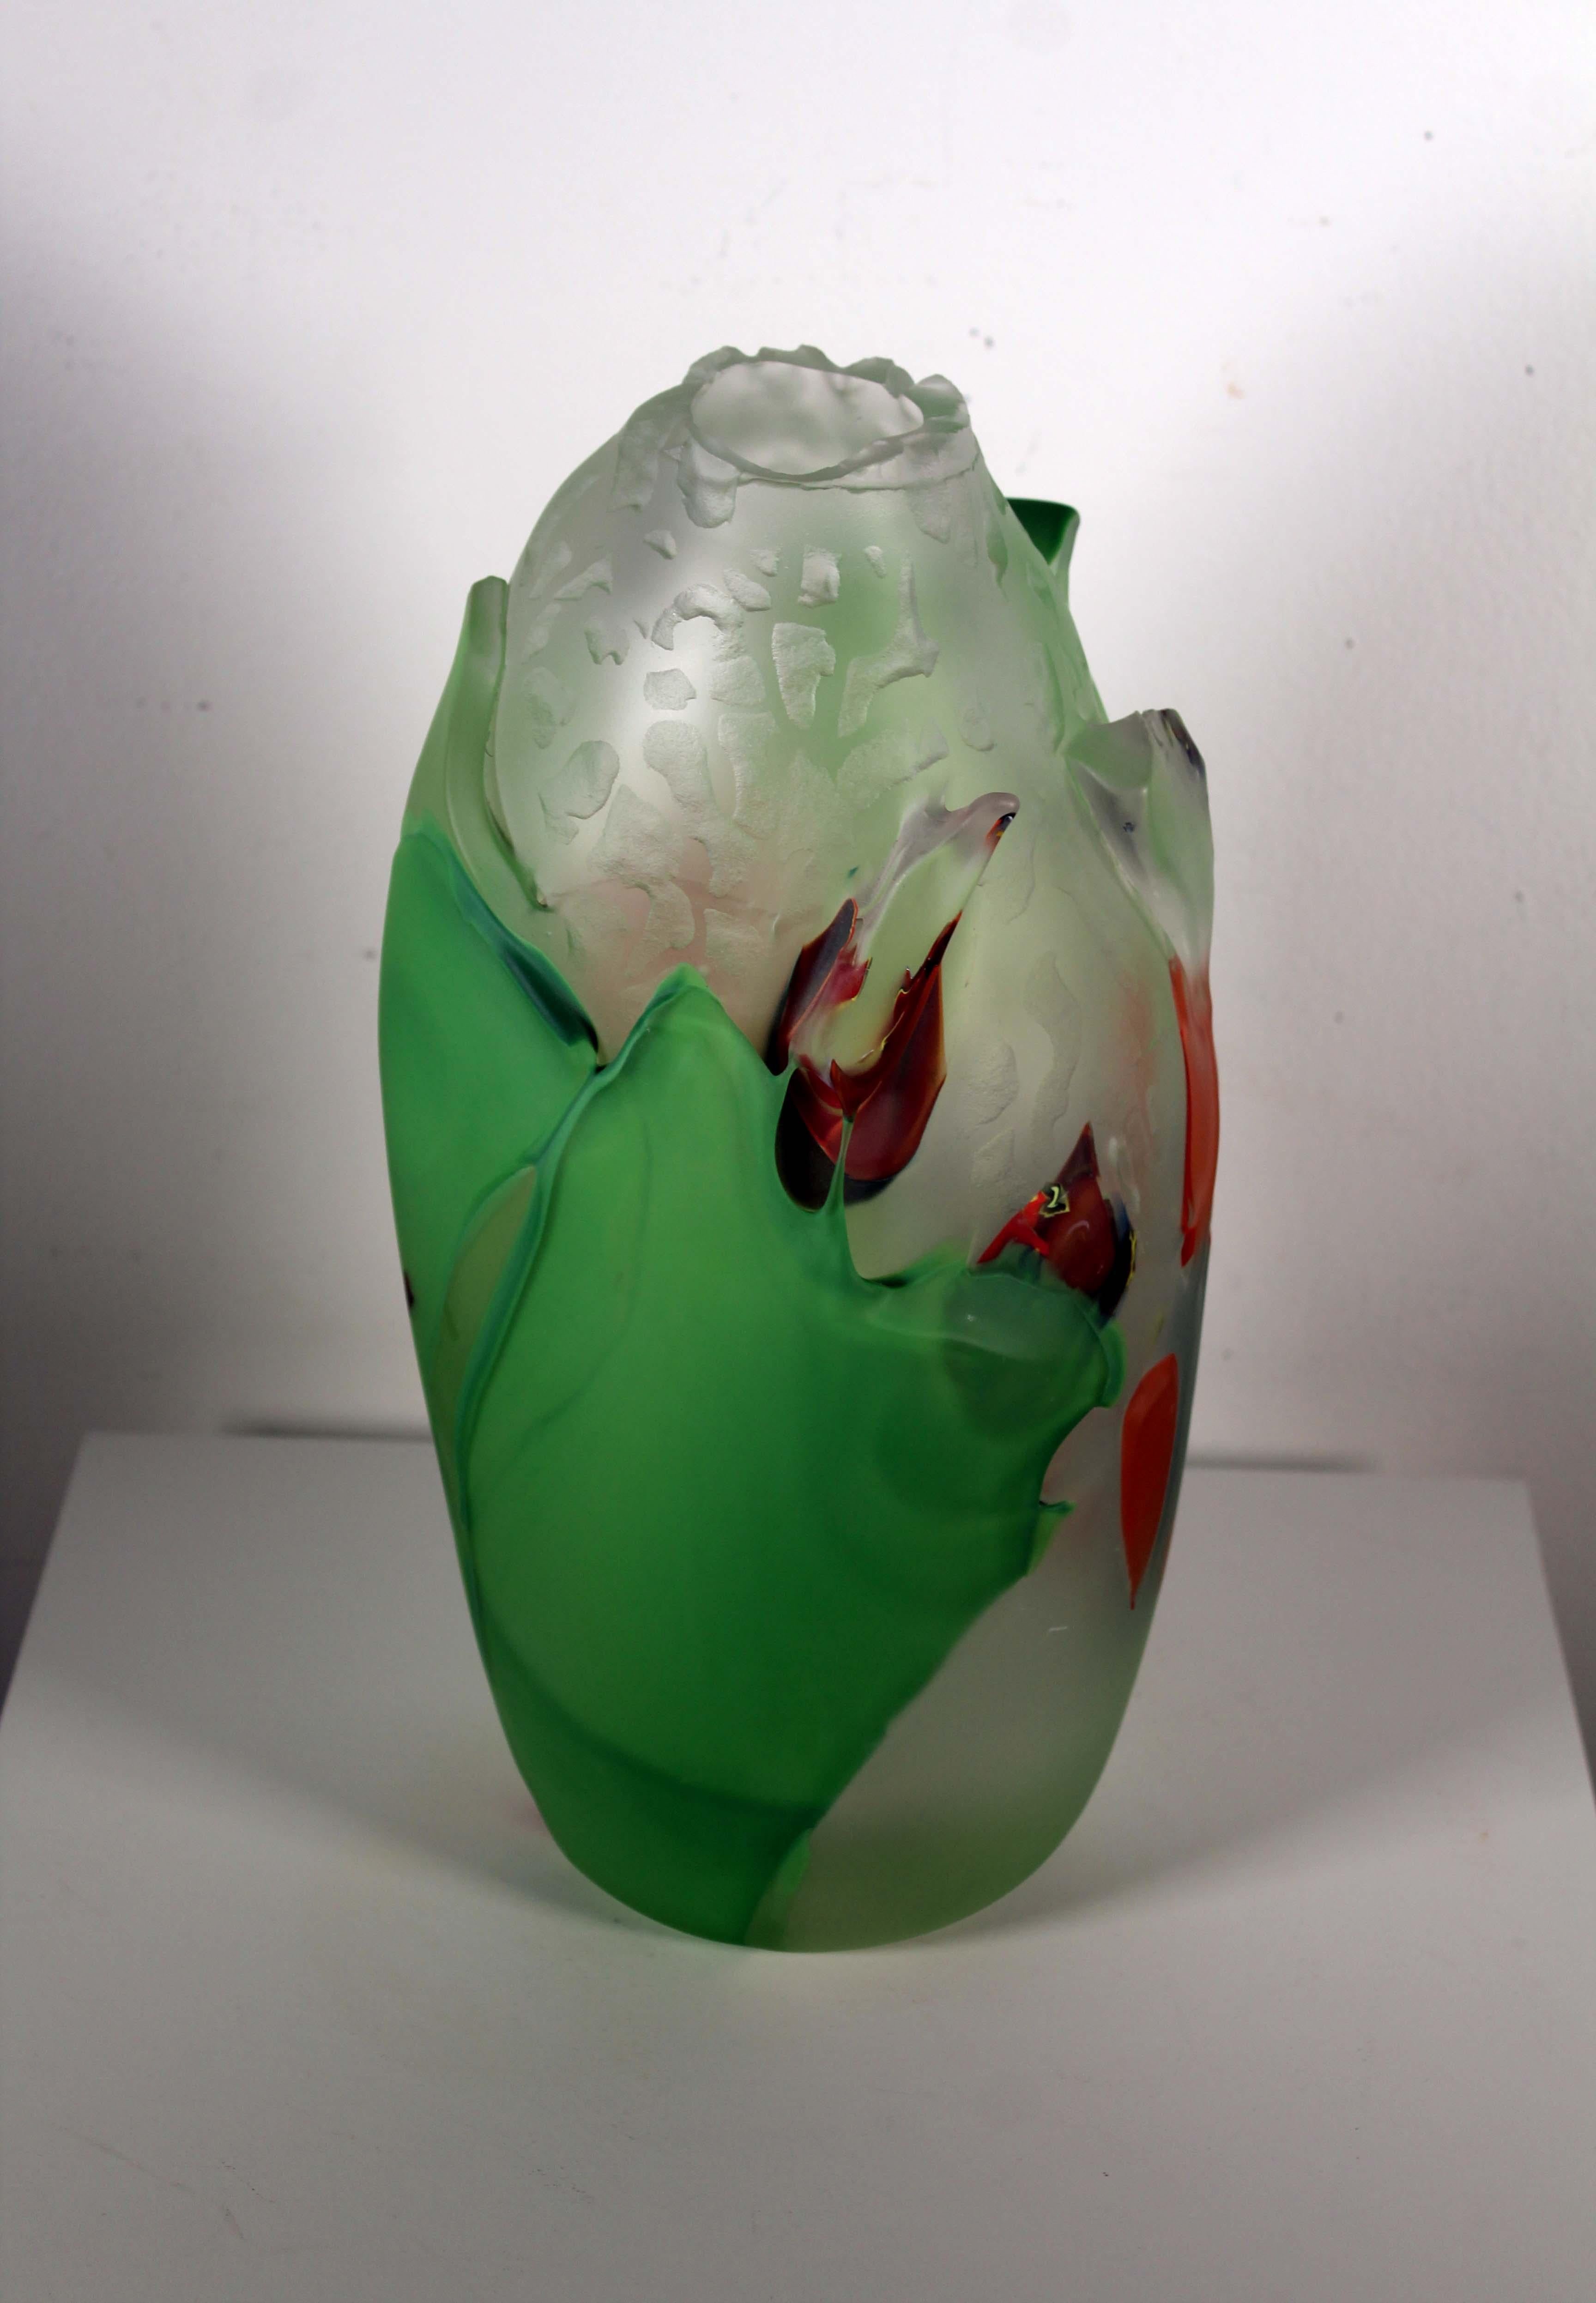 Un étonnant vase ou récipient en verre d'art contemporain soufflé à la main par l'artiste Judson Guérard, basé en Caroline du Nord. Signature gravée sur le fond. De la série 